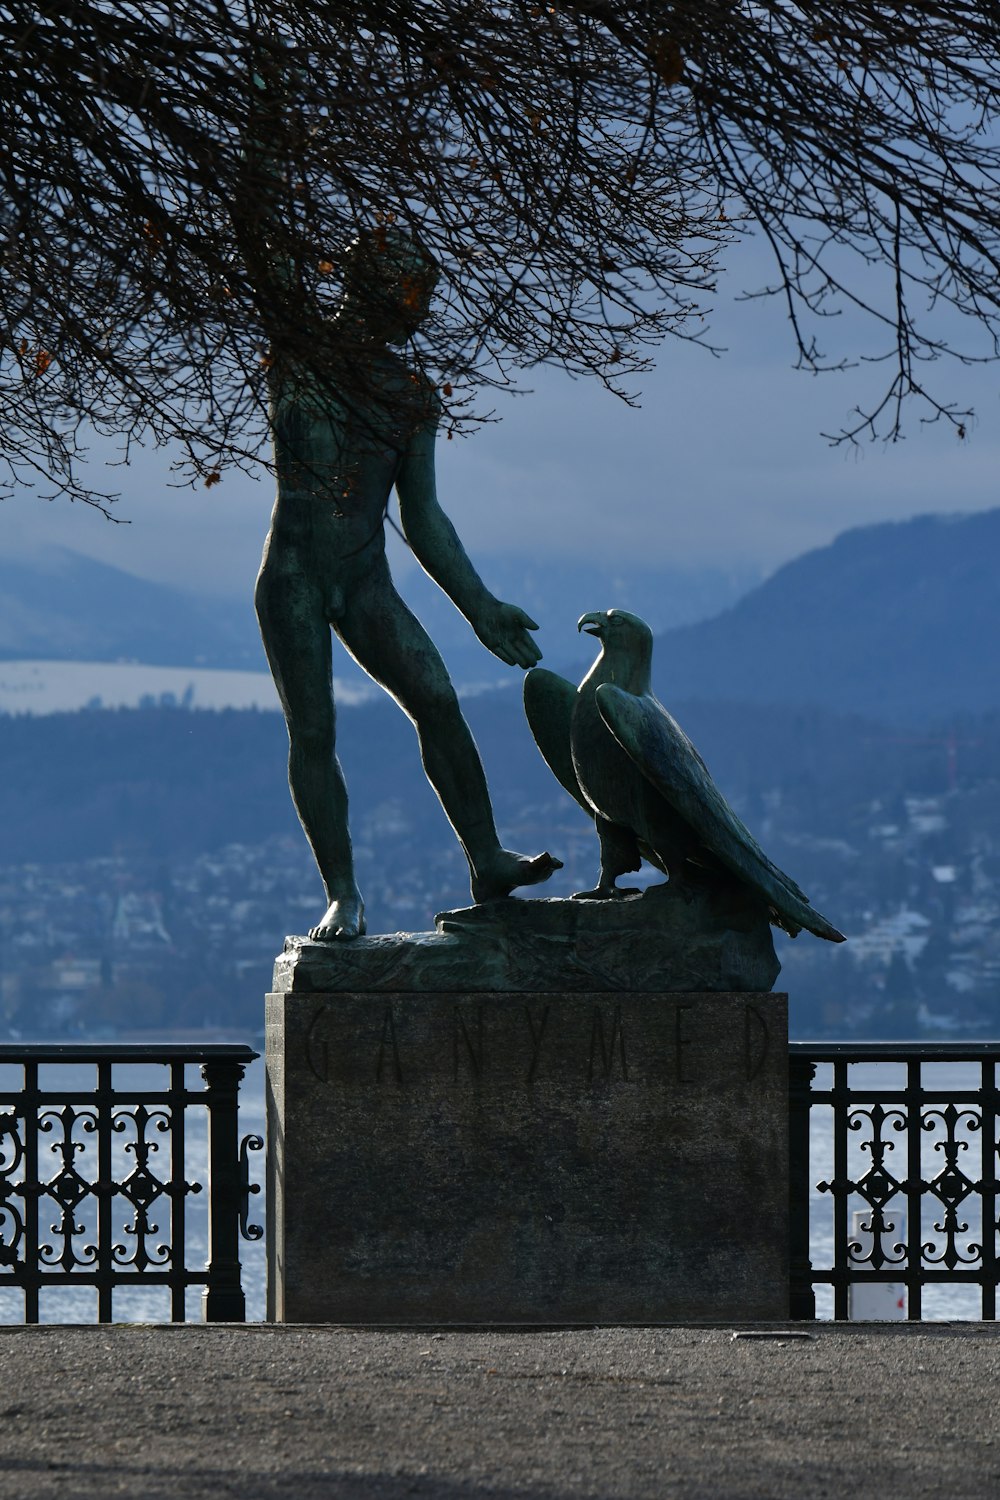 Eine Statue eines Mannes mit einem Vogel an der Hand